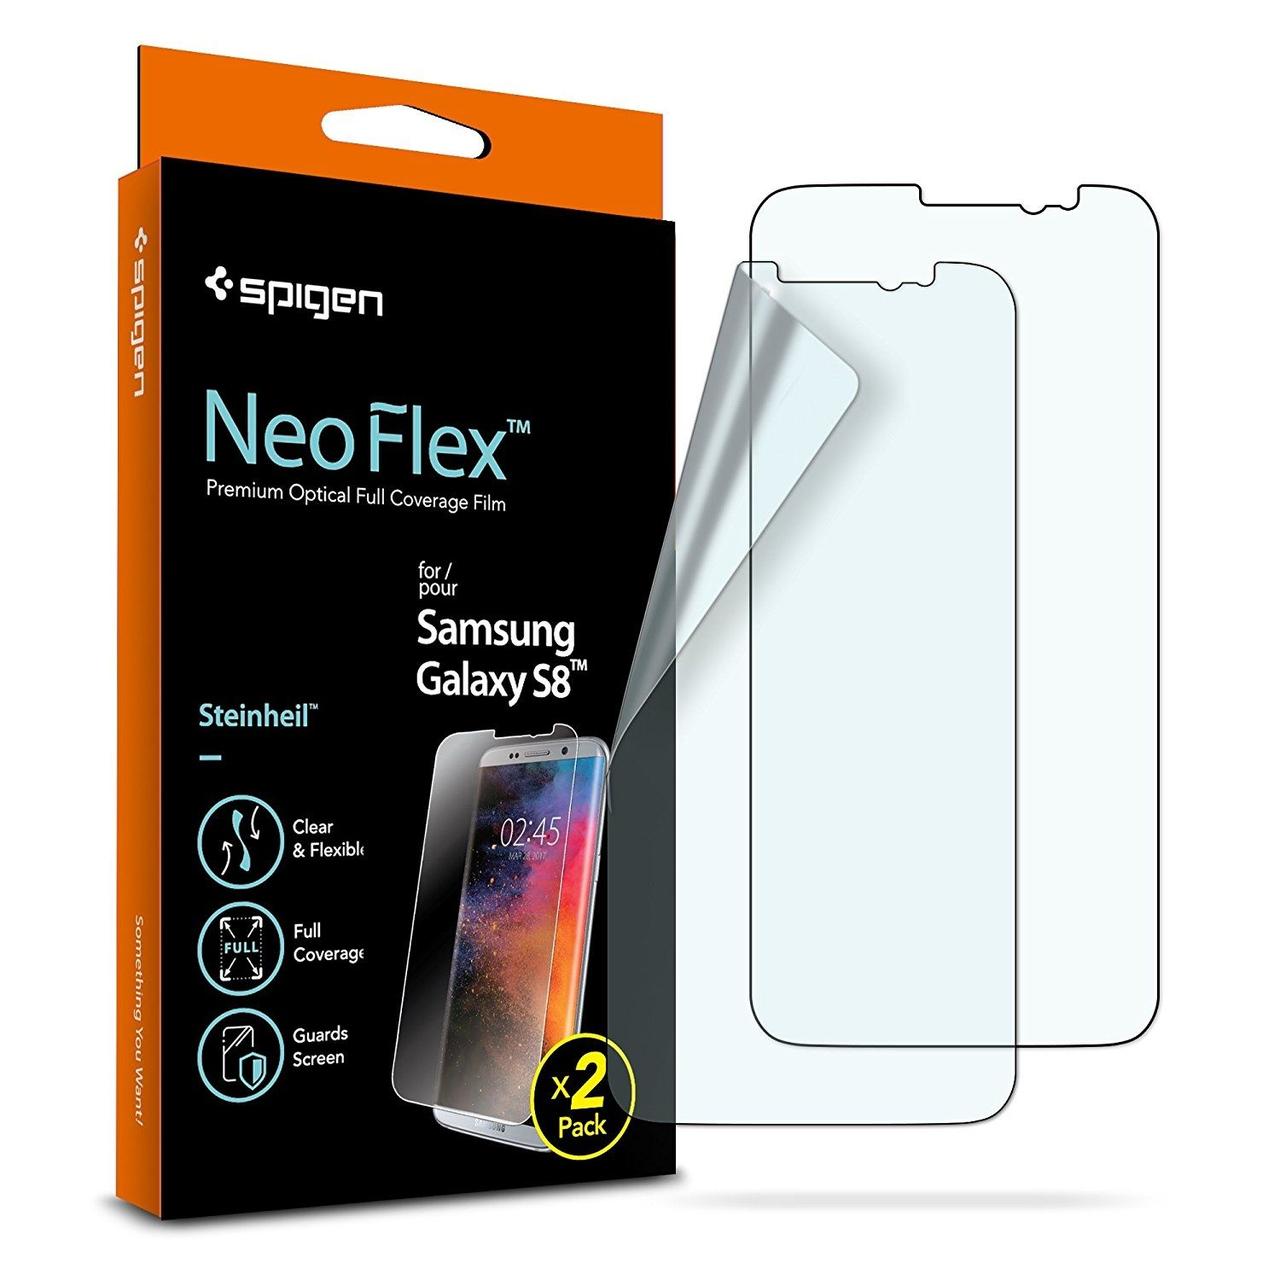 Захисна плівка Spigen для Samsung Galaxy S8 — Neo Flex, 2 шт (565FL21701)